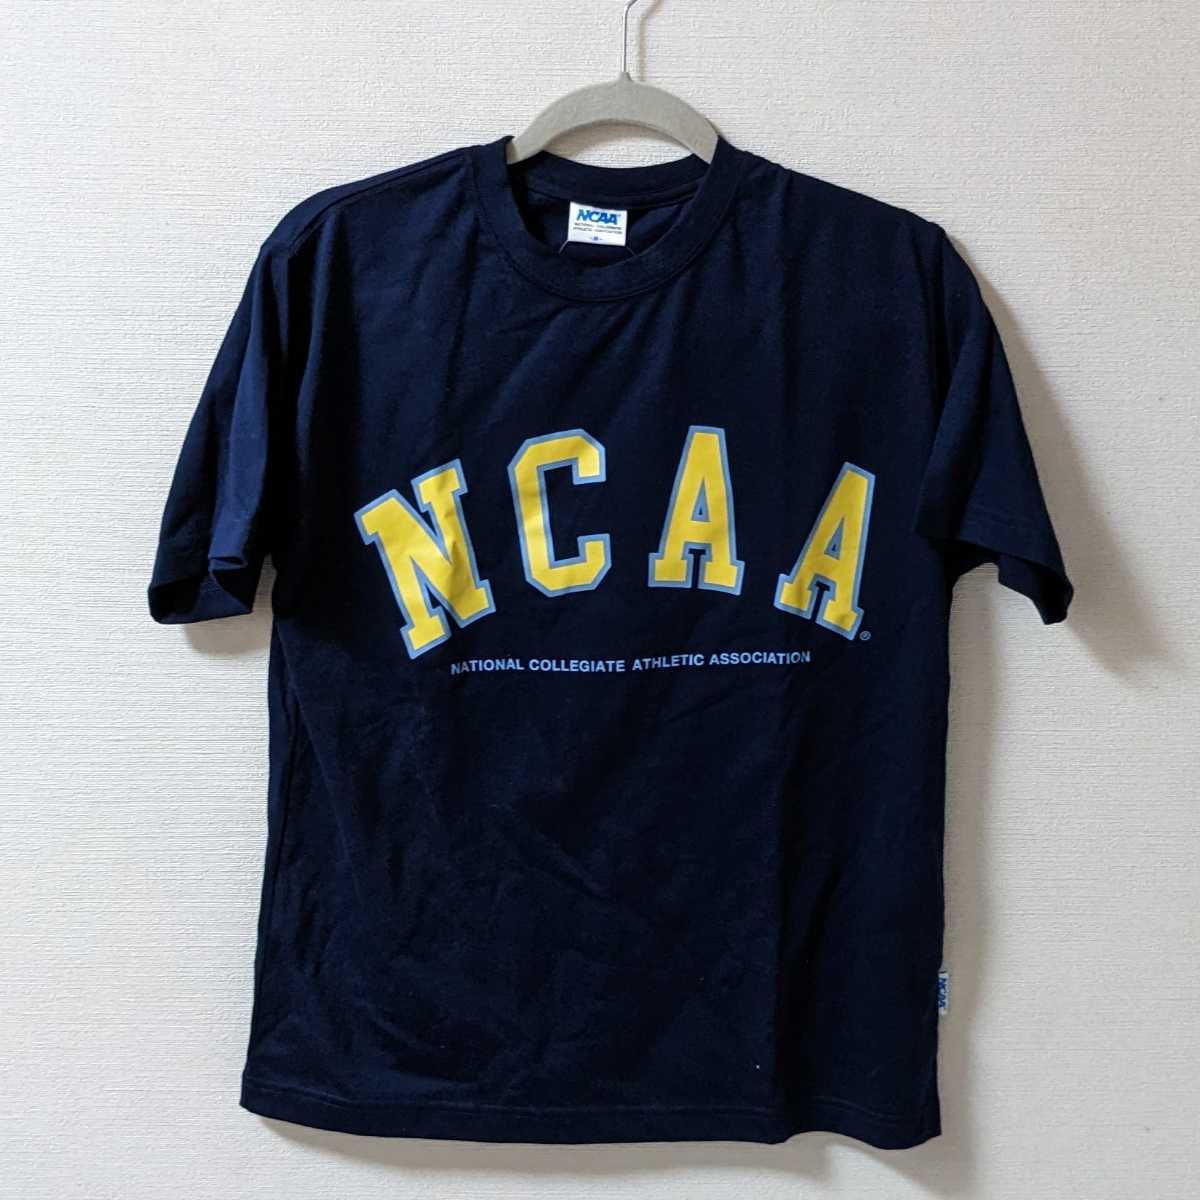 新品未使用 M NCAA 半袖Tシャツ KM0160 ネイビー イエロー カレッジtシャツ アメカジ トレーニング